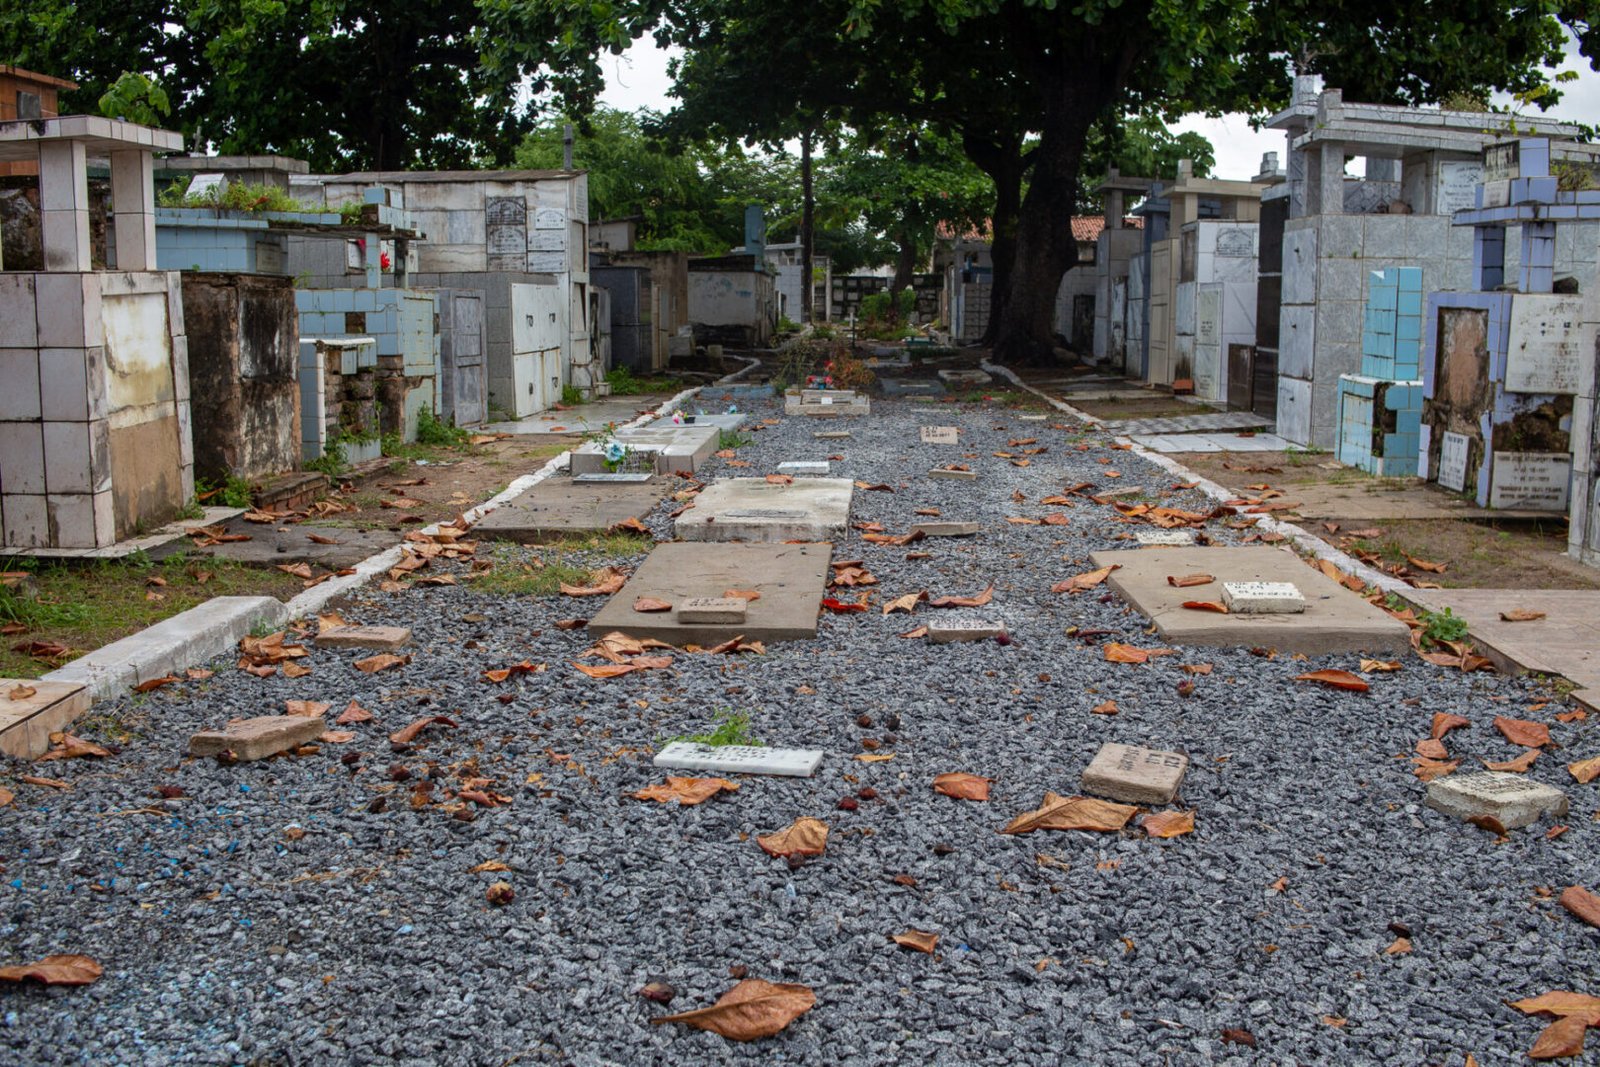 @orlandocostaportfolio Cemiterios 42 scaled - Sem vagas, cemitérios de Maceió enterram 80% dos mortos em cova rasa 